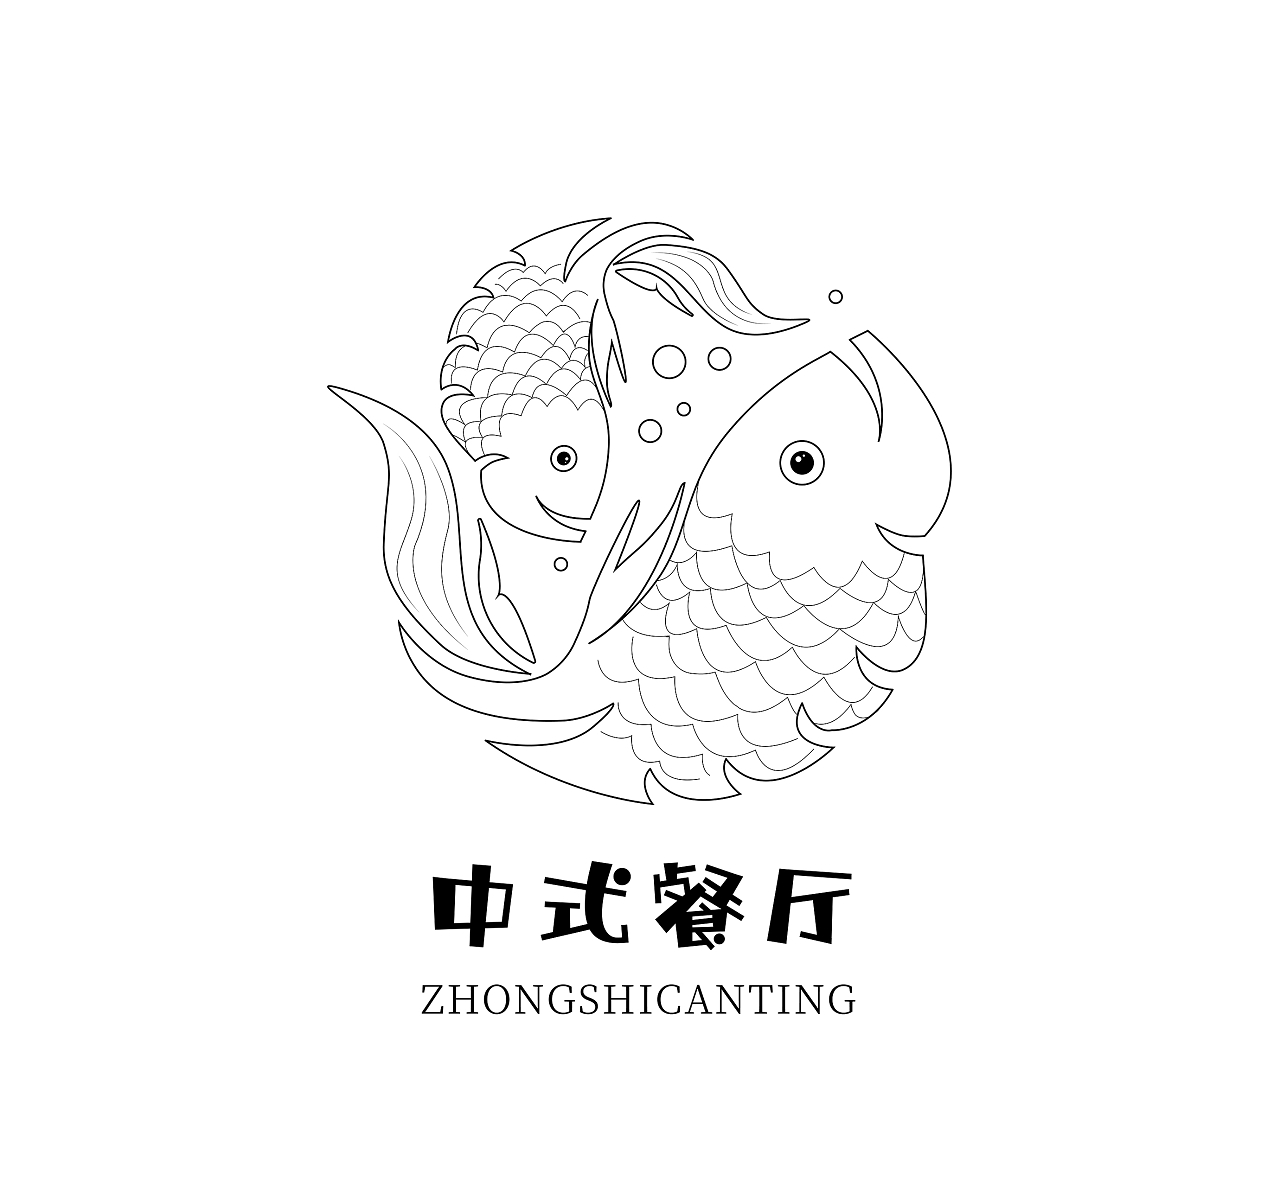 中餐厅 中式餐厅 图标 双鱼logo 线性图标 经典黑色餐厅logo